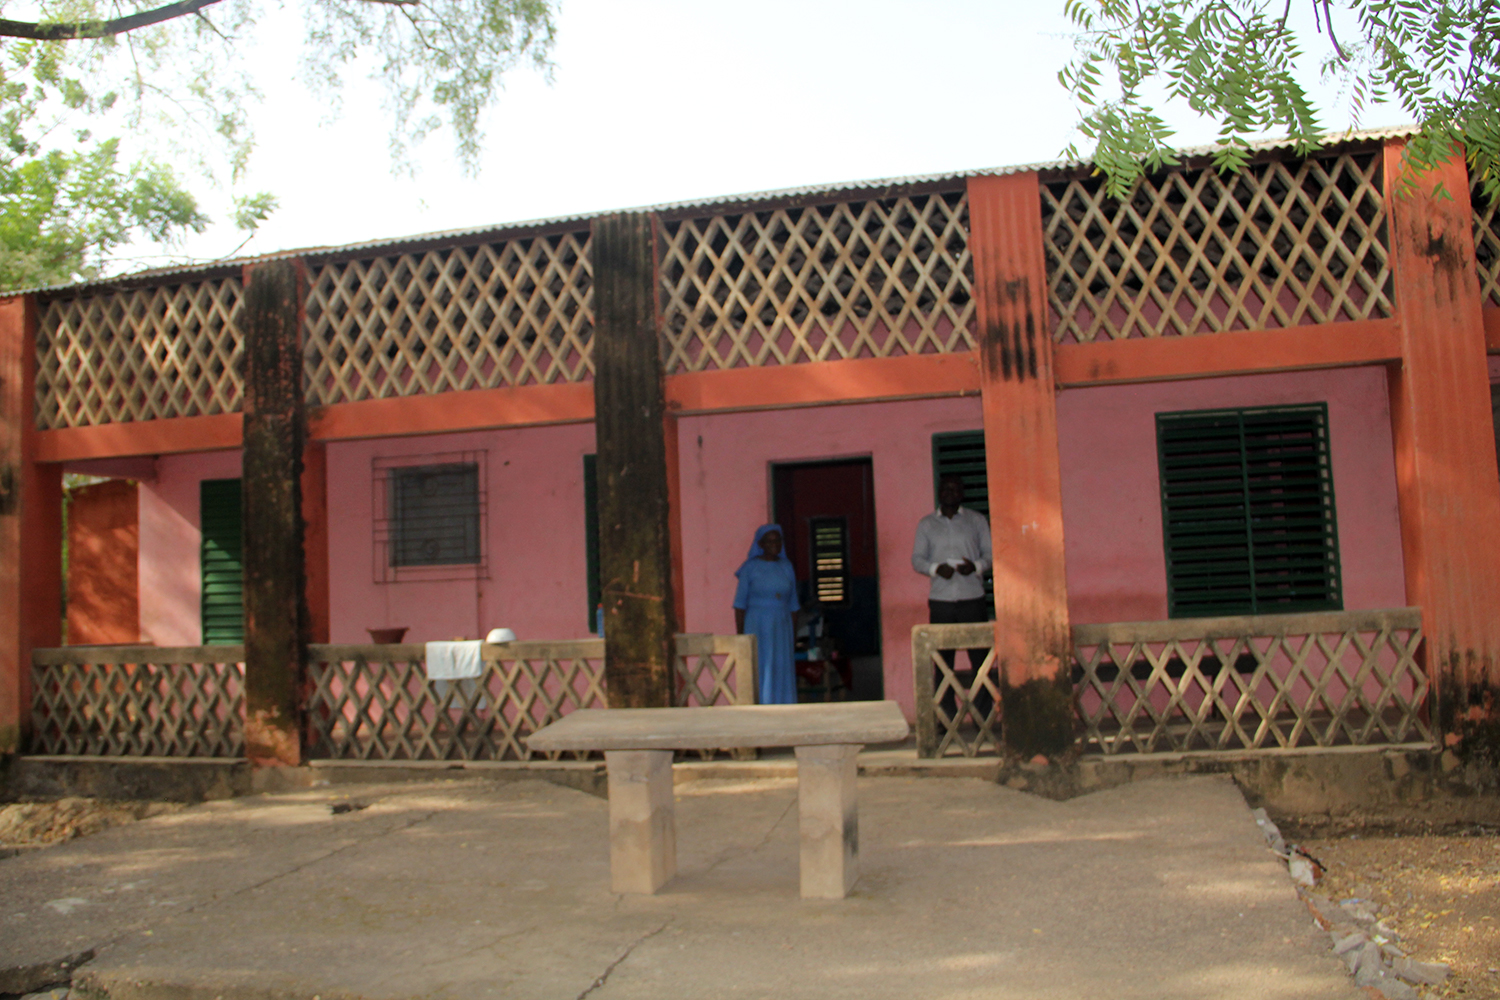 La clinique tenue par les soeurs est le premier endroit où viennent femmes et enfants malades à Niego car elle est complètement gratuite. 